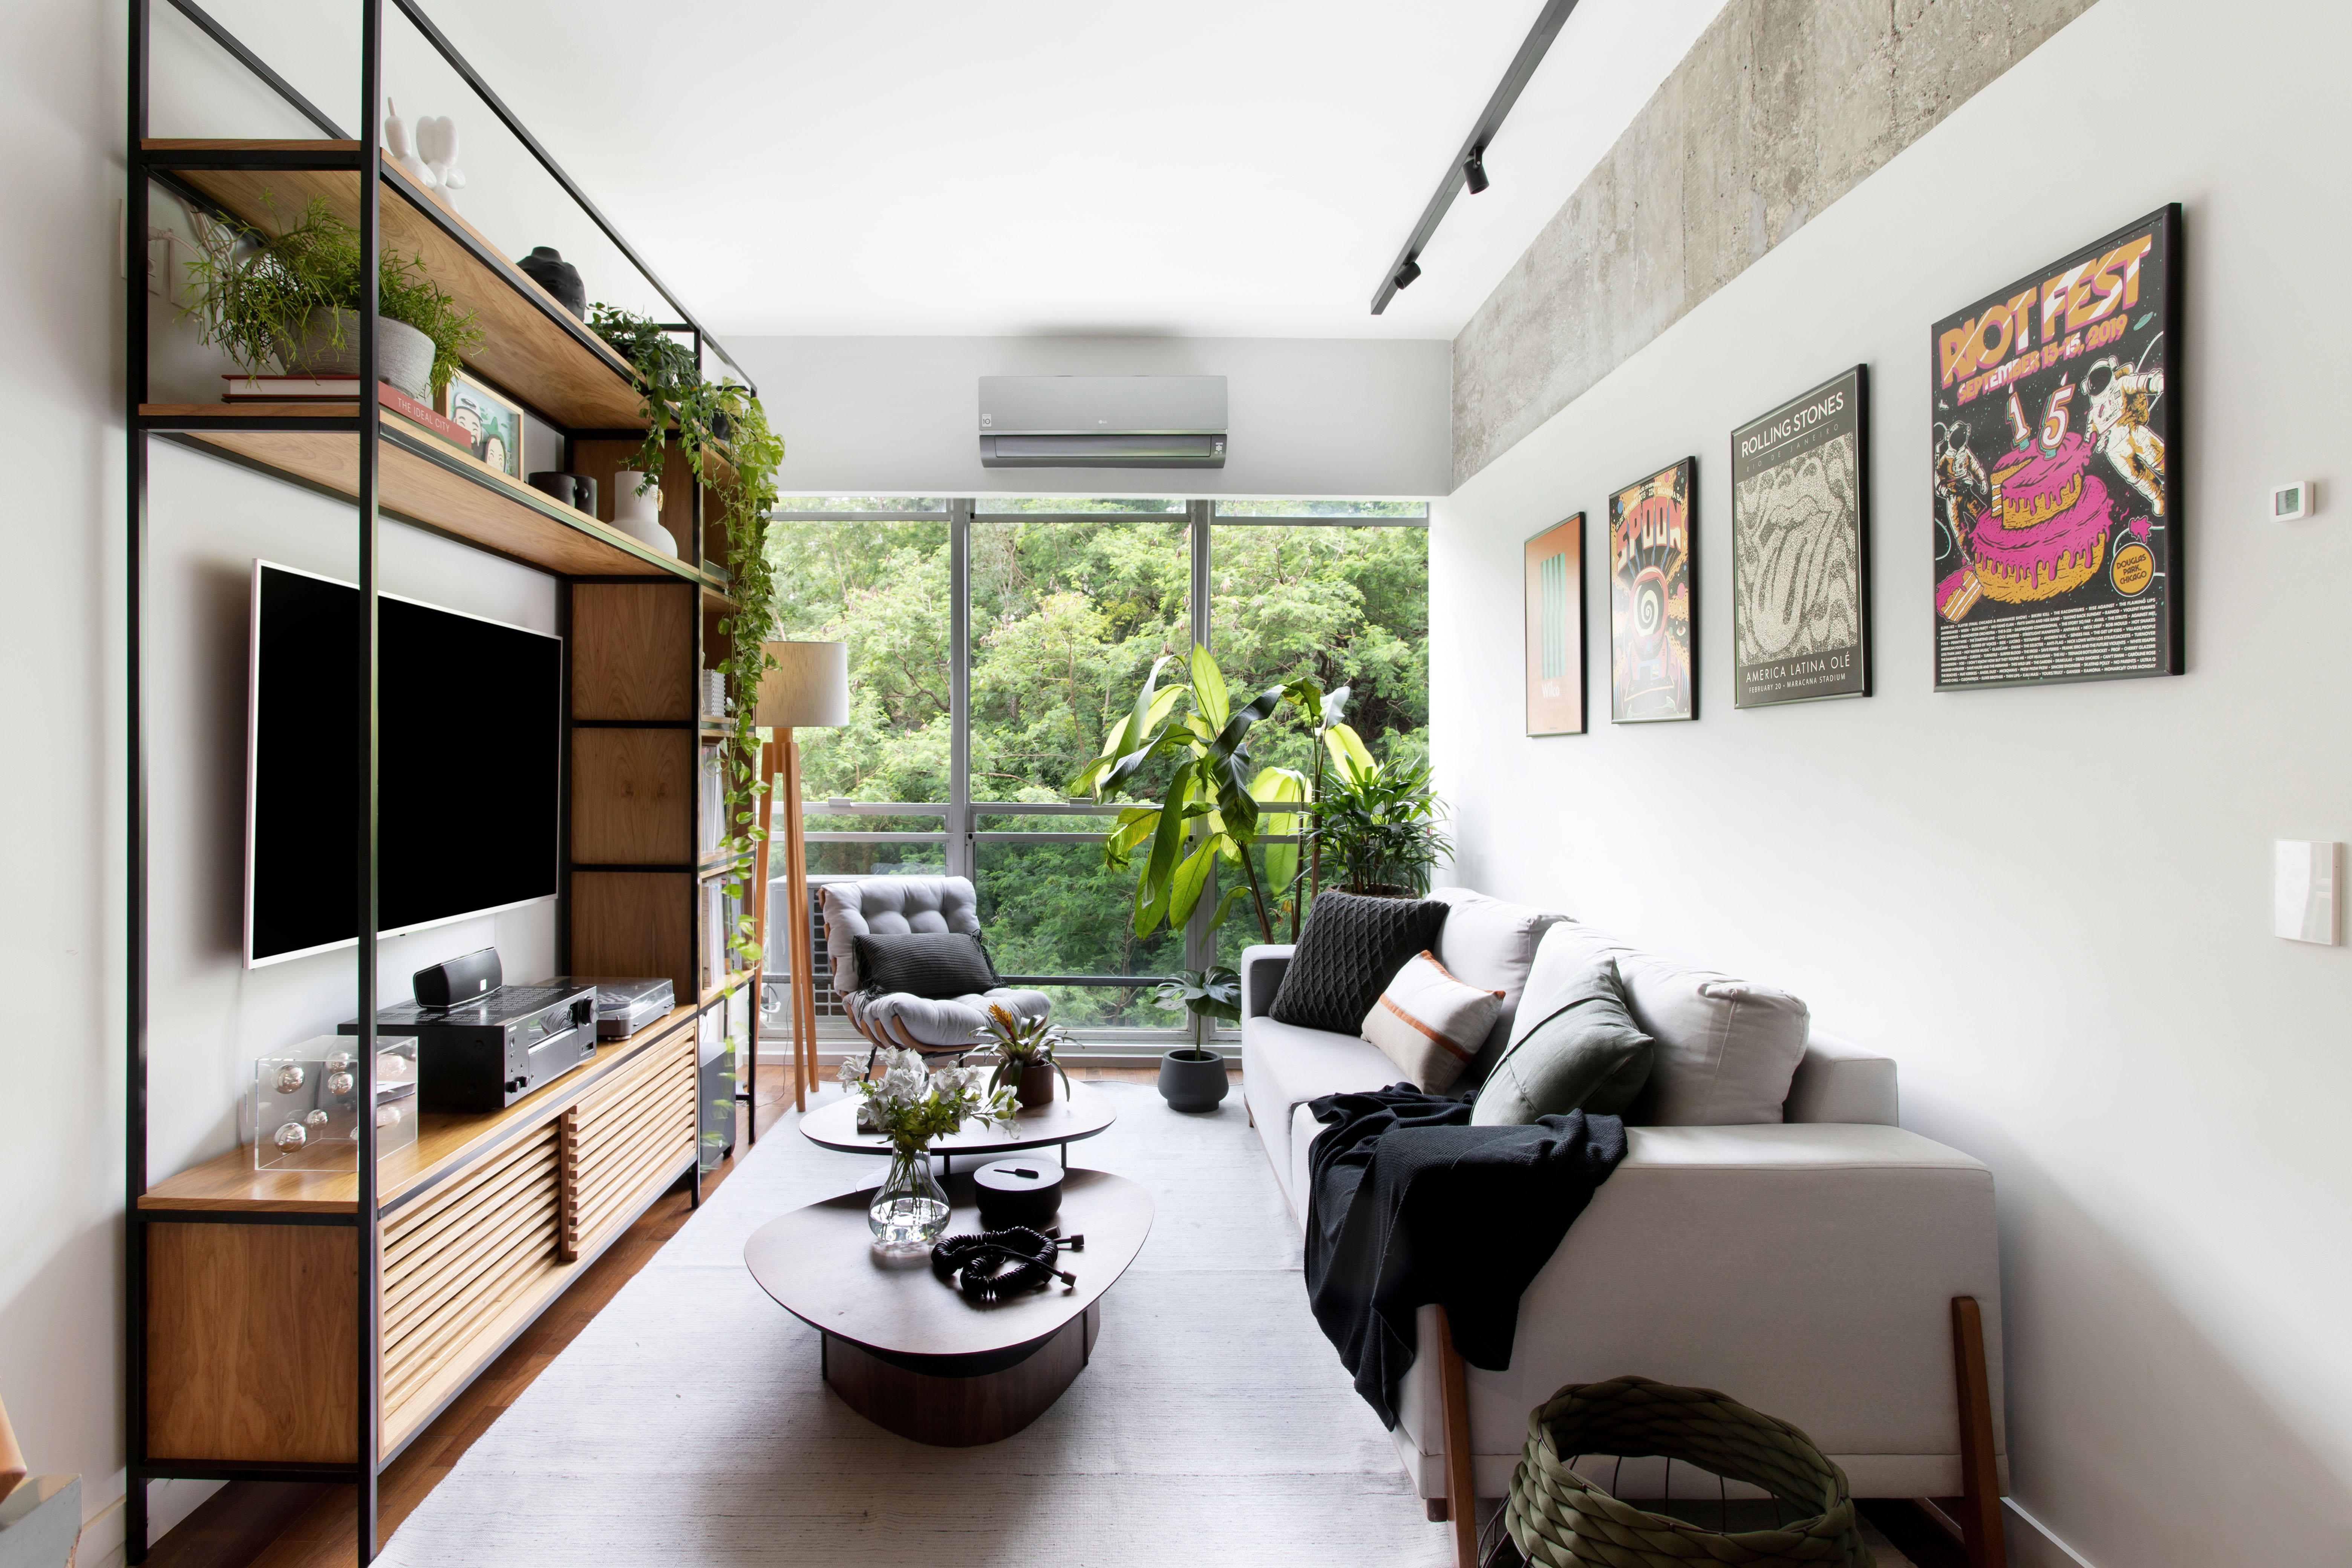  Industrialny: apartament o powierzchni 80 m² ma czarno-szarą paletę, plakaty i integrację